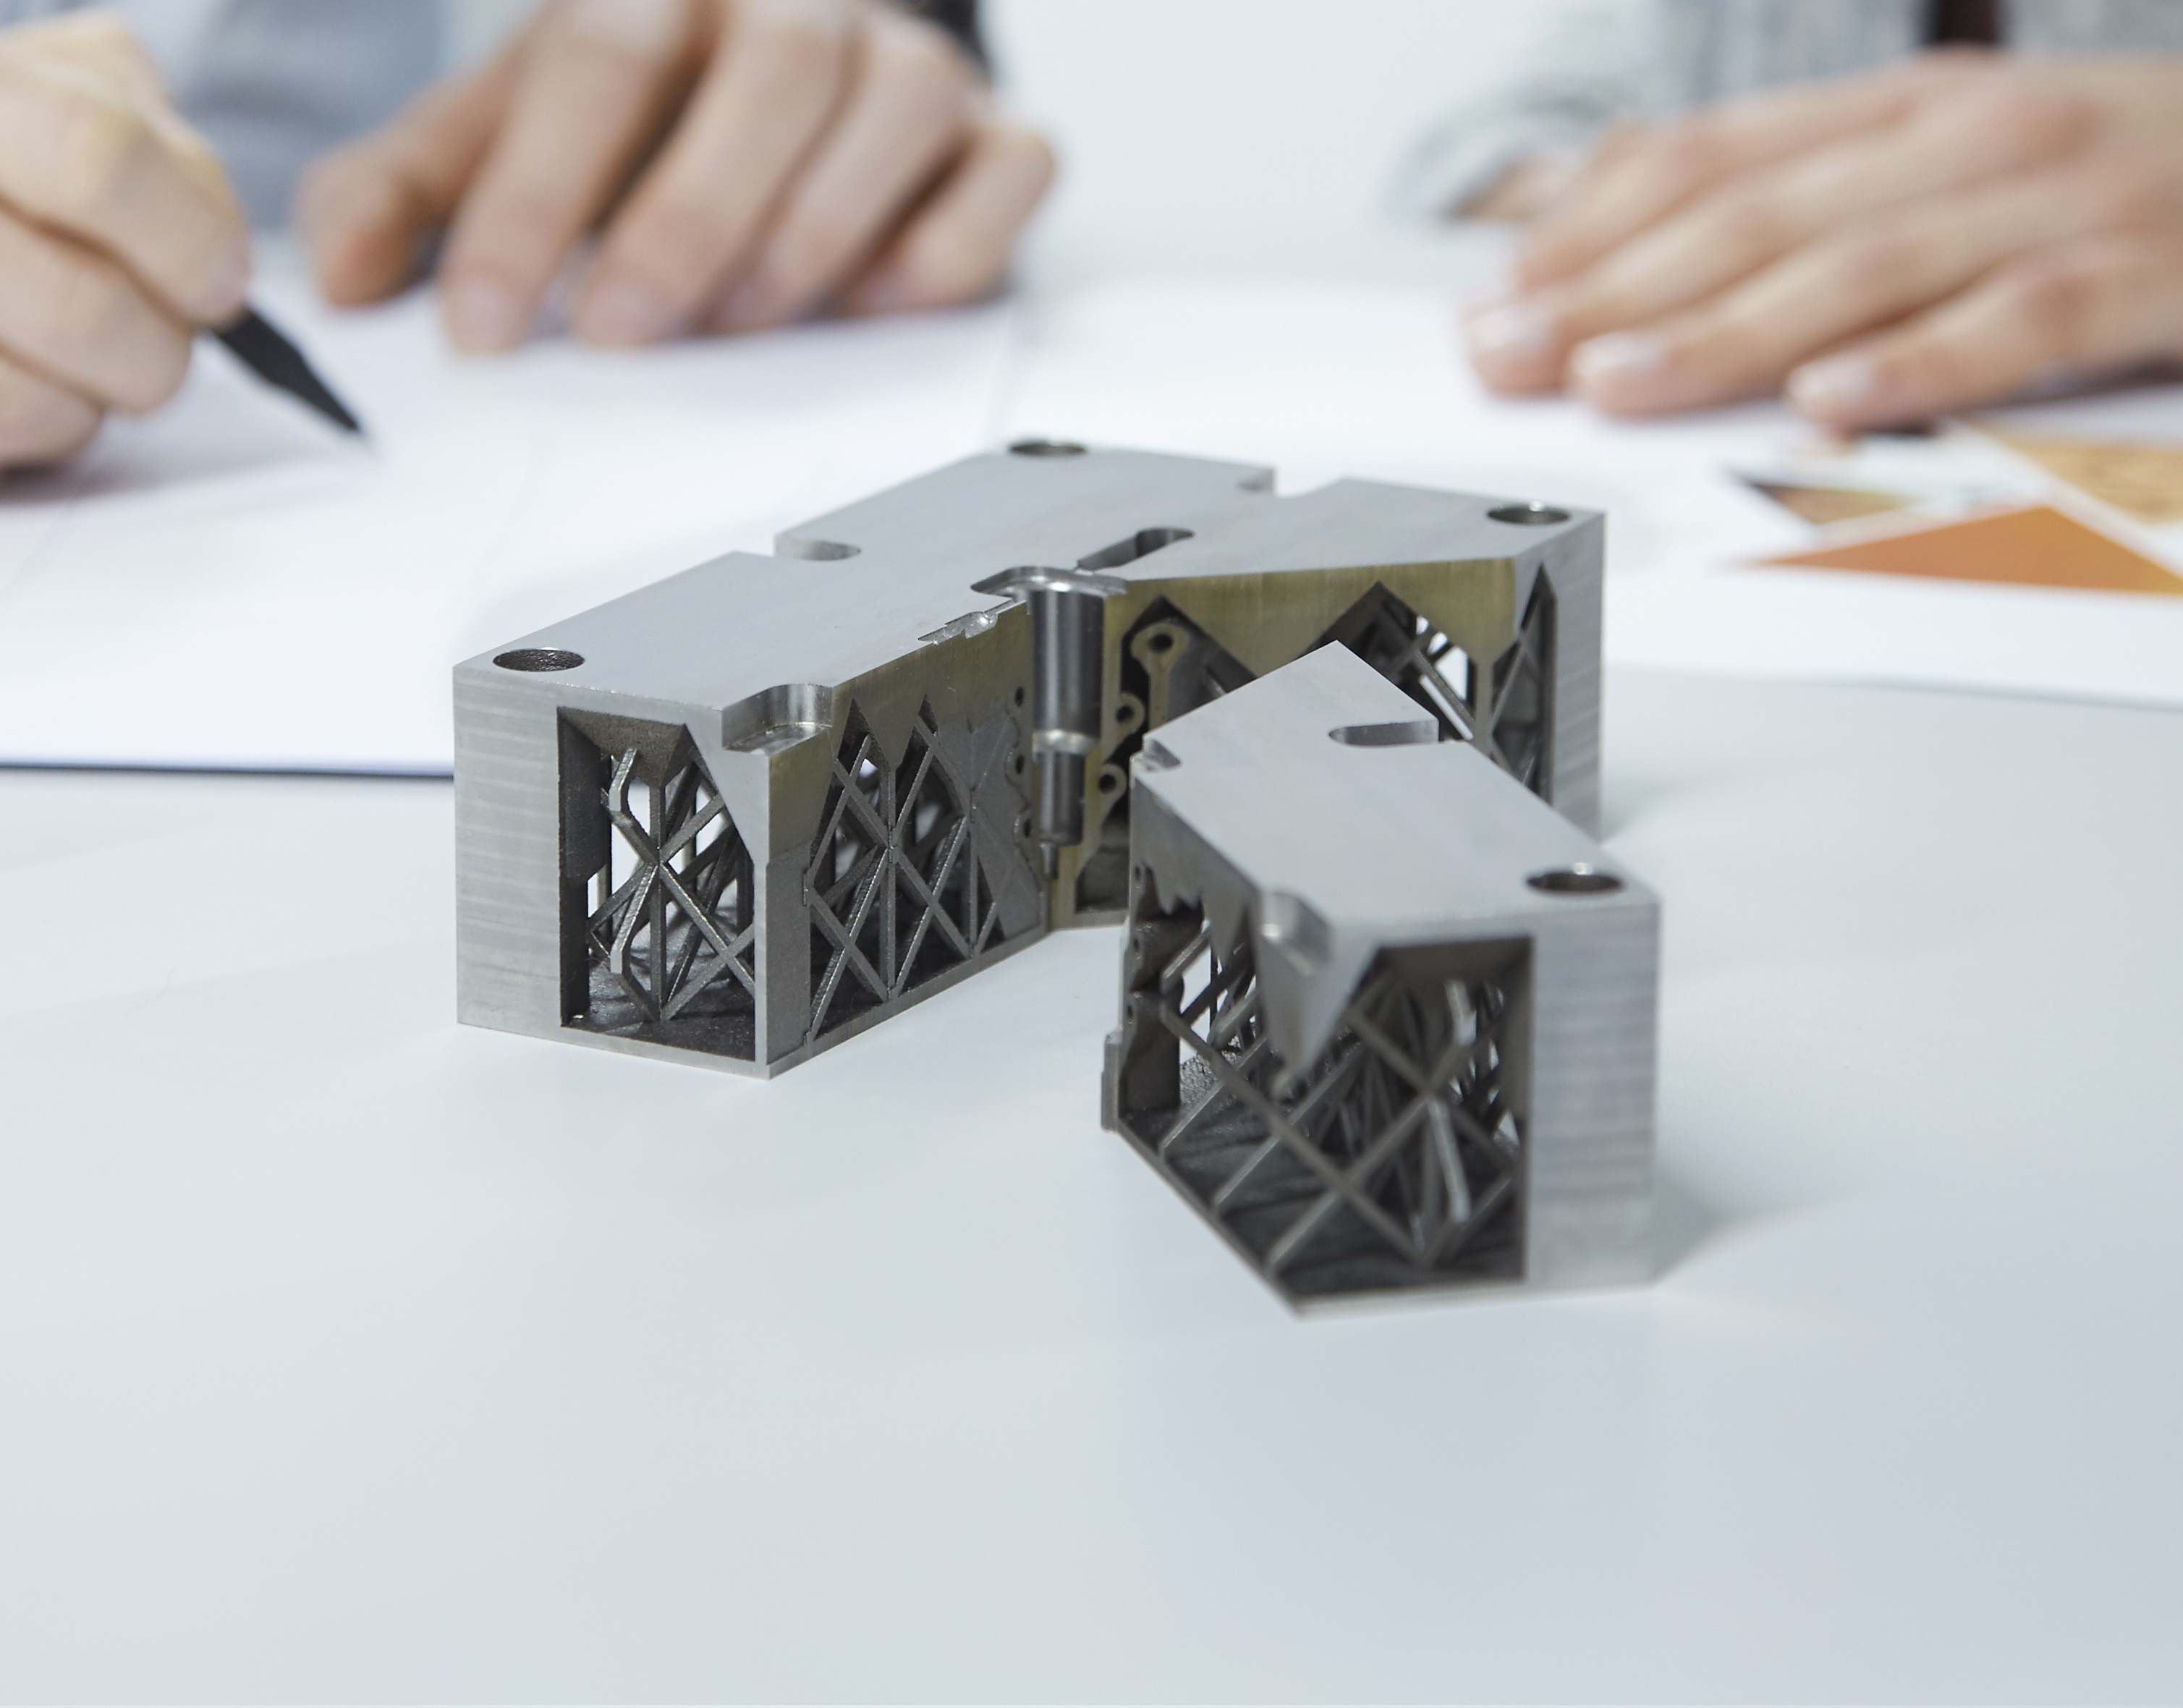 3D-Objekt aus Metall vor Arbeitsskizzen